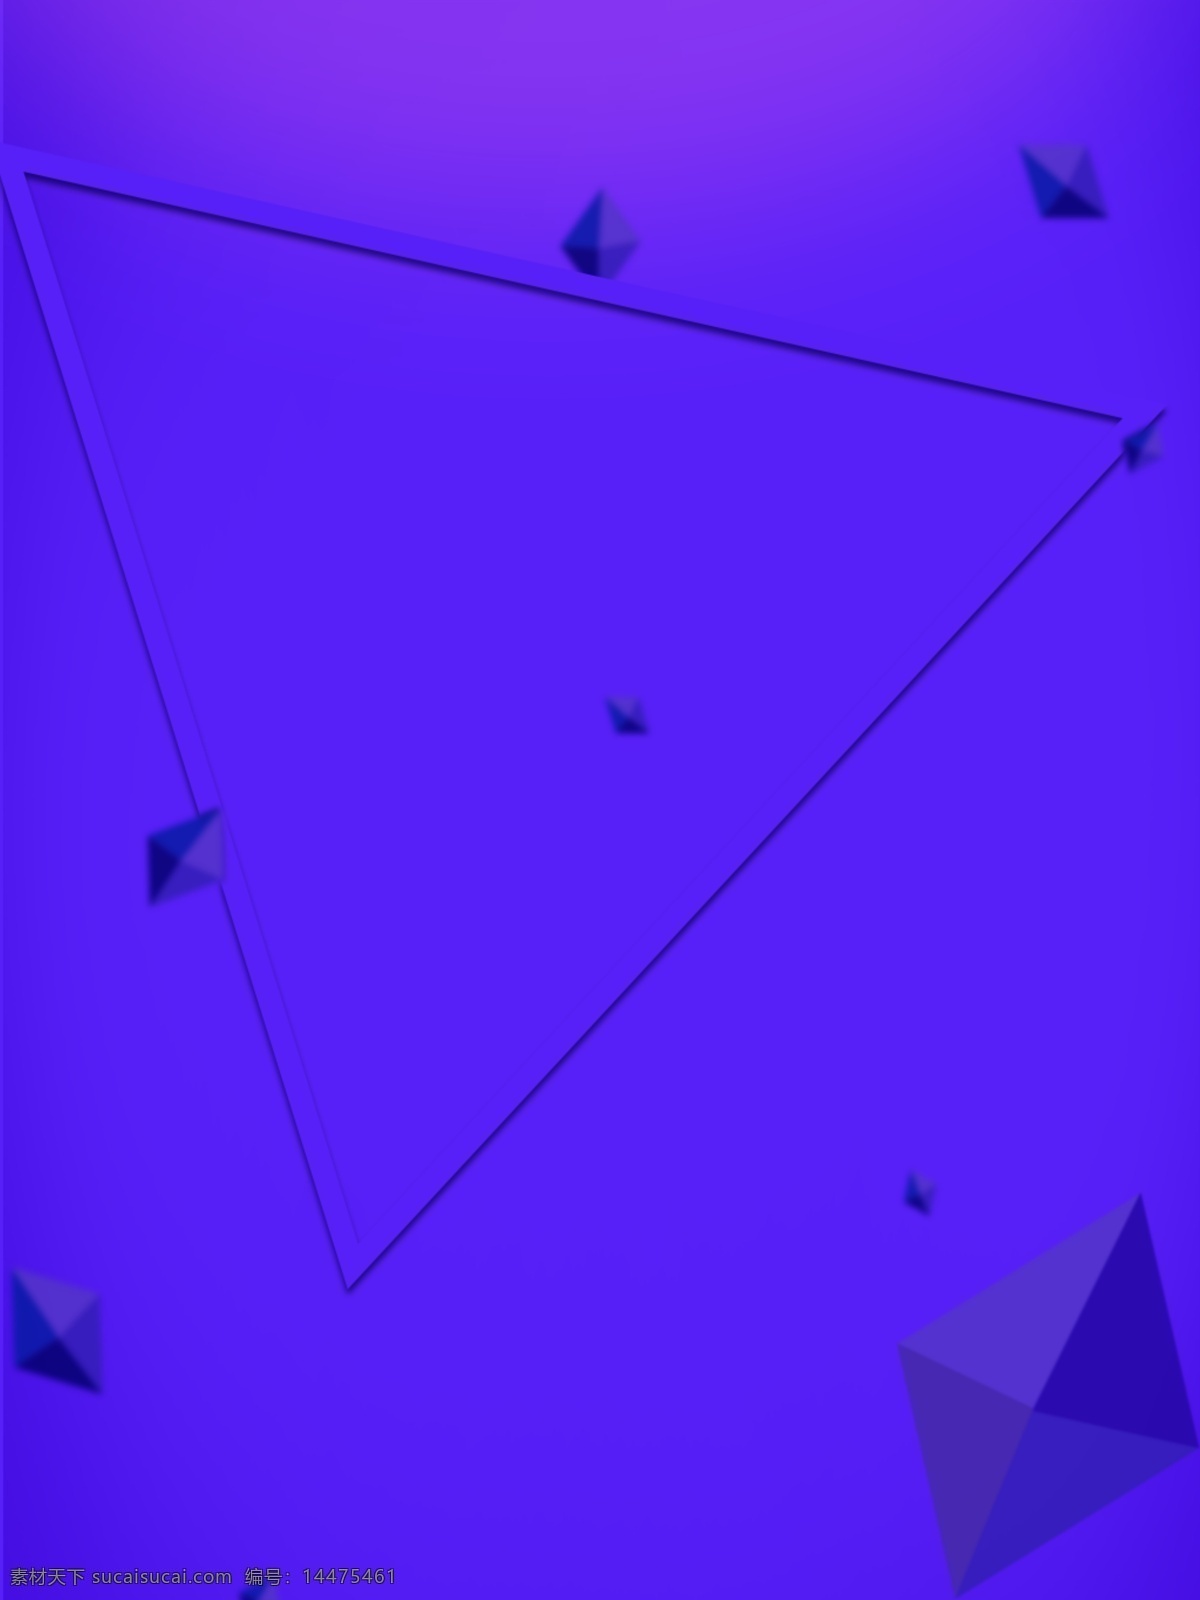 立体几何 科技 风 背景 立体 动感 紫色 唯美 几何 原创 空间 炫酷 带感 不规则 浪漫 简约